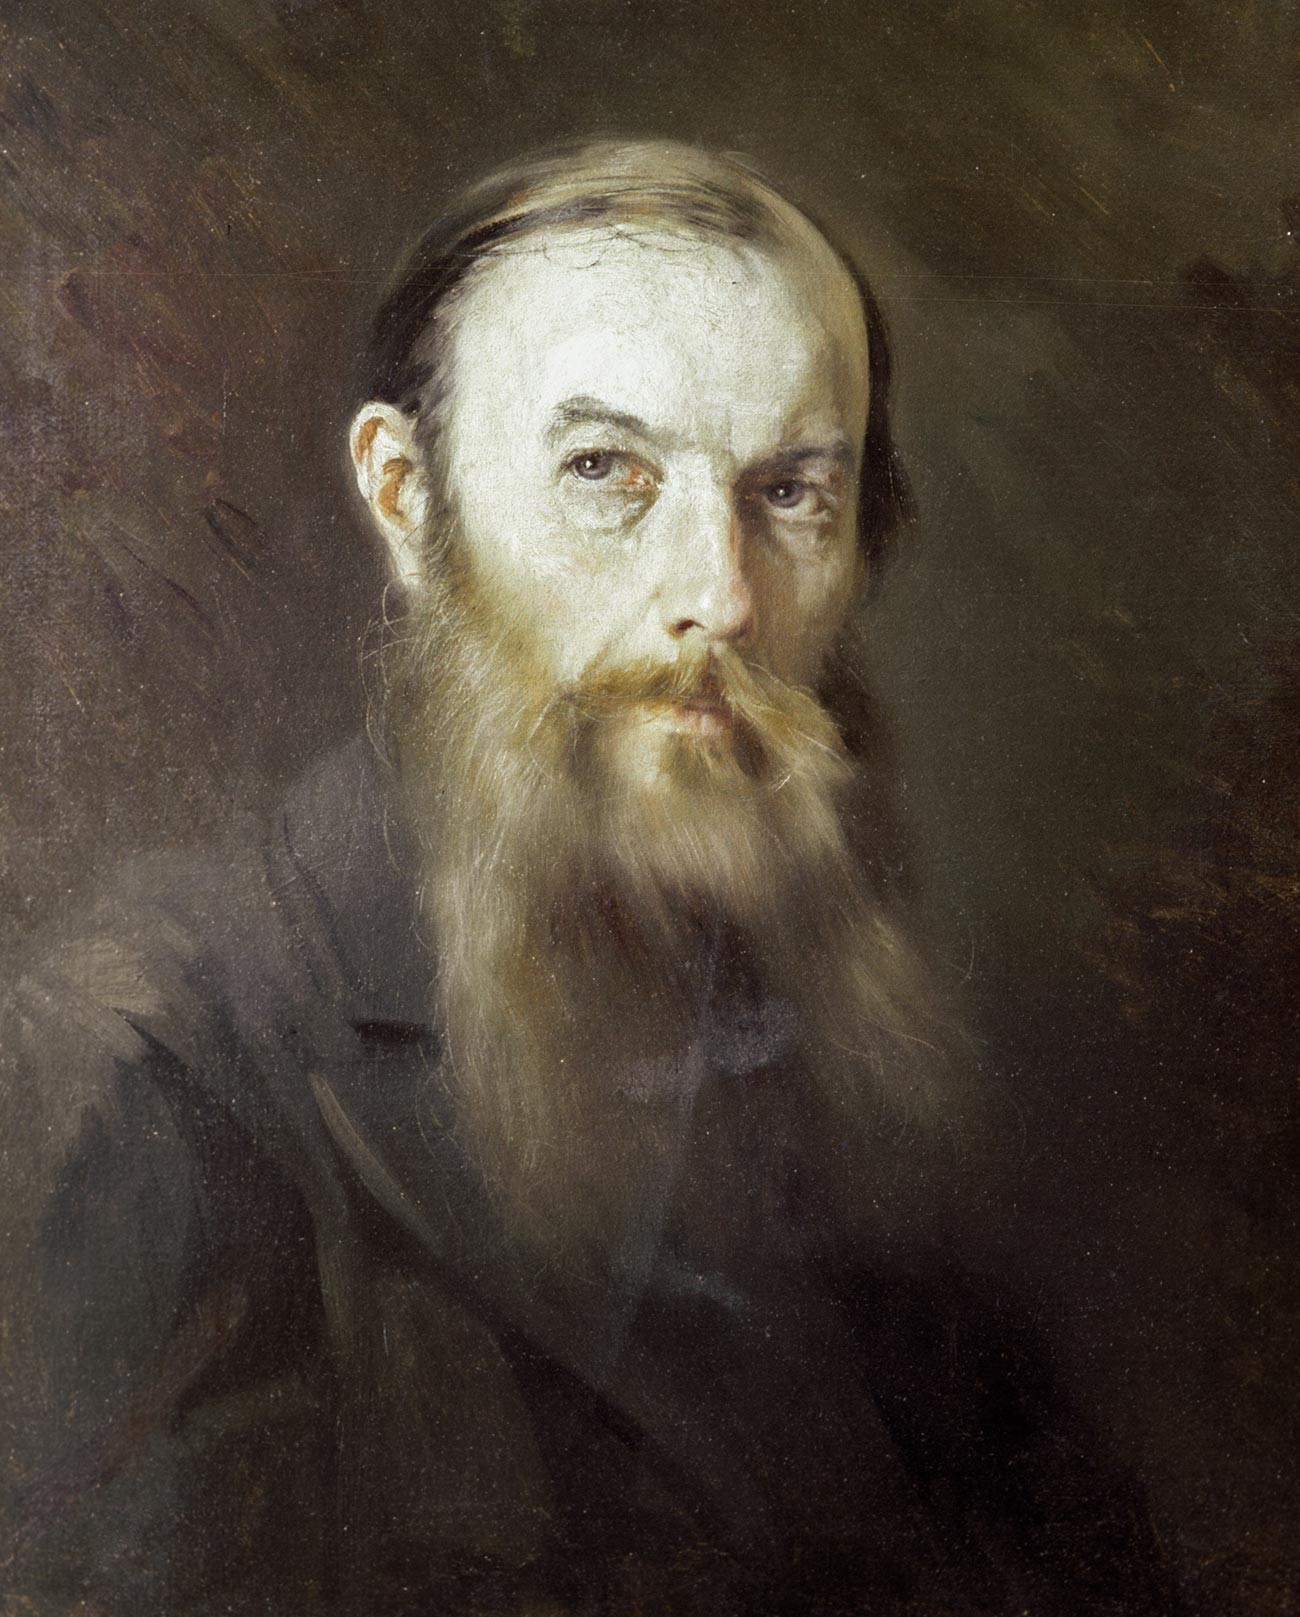 Retrato de Fiódor Dostoiévski por M. Scherbatov.